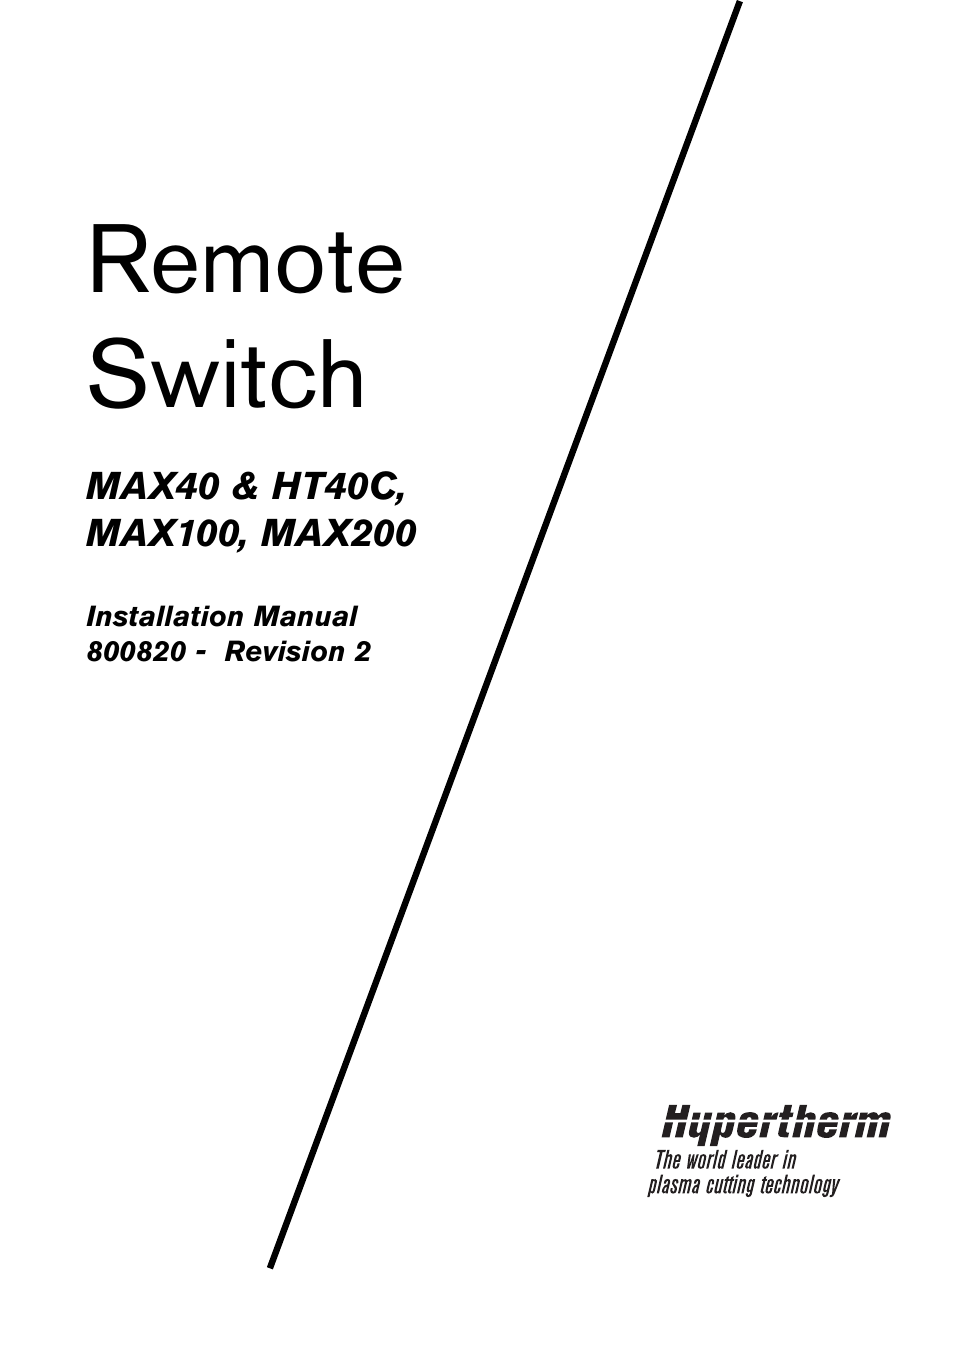 MAX200 Remote Switch